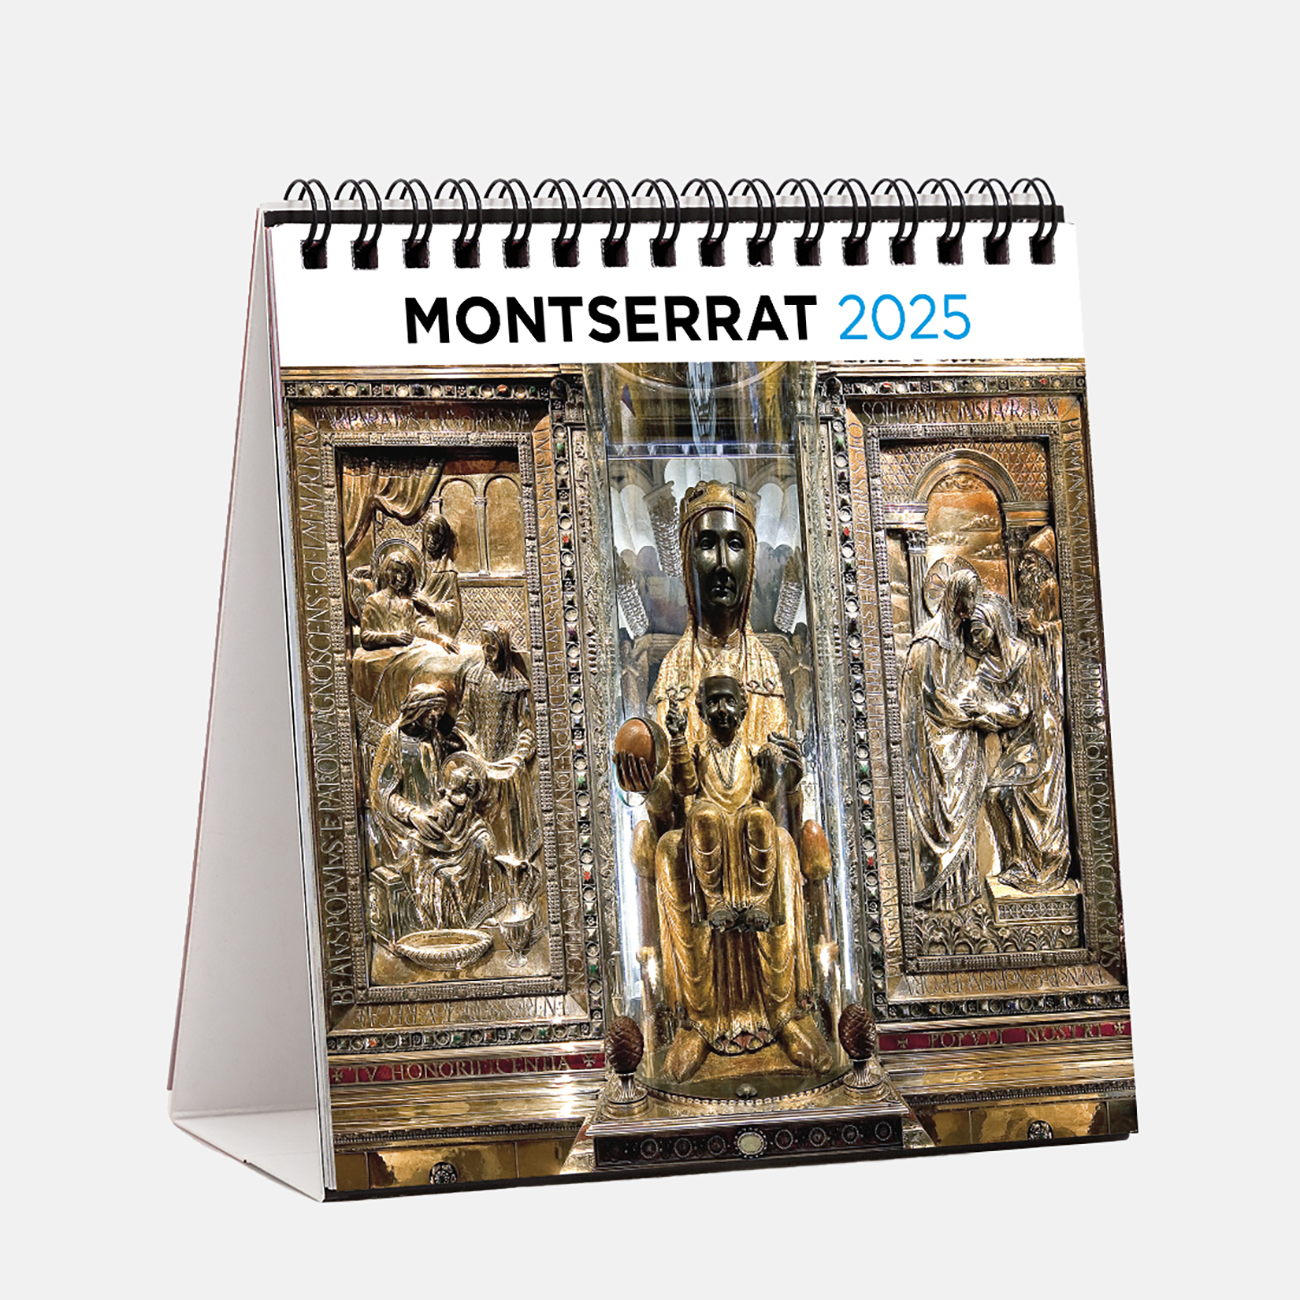 Calendrier 2025 Montserrat s25m calendario sobremesa 2025 montserrat